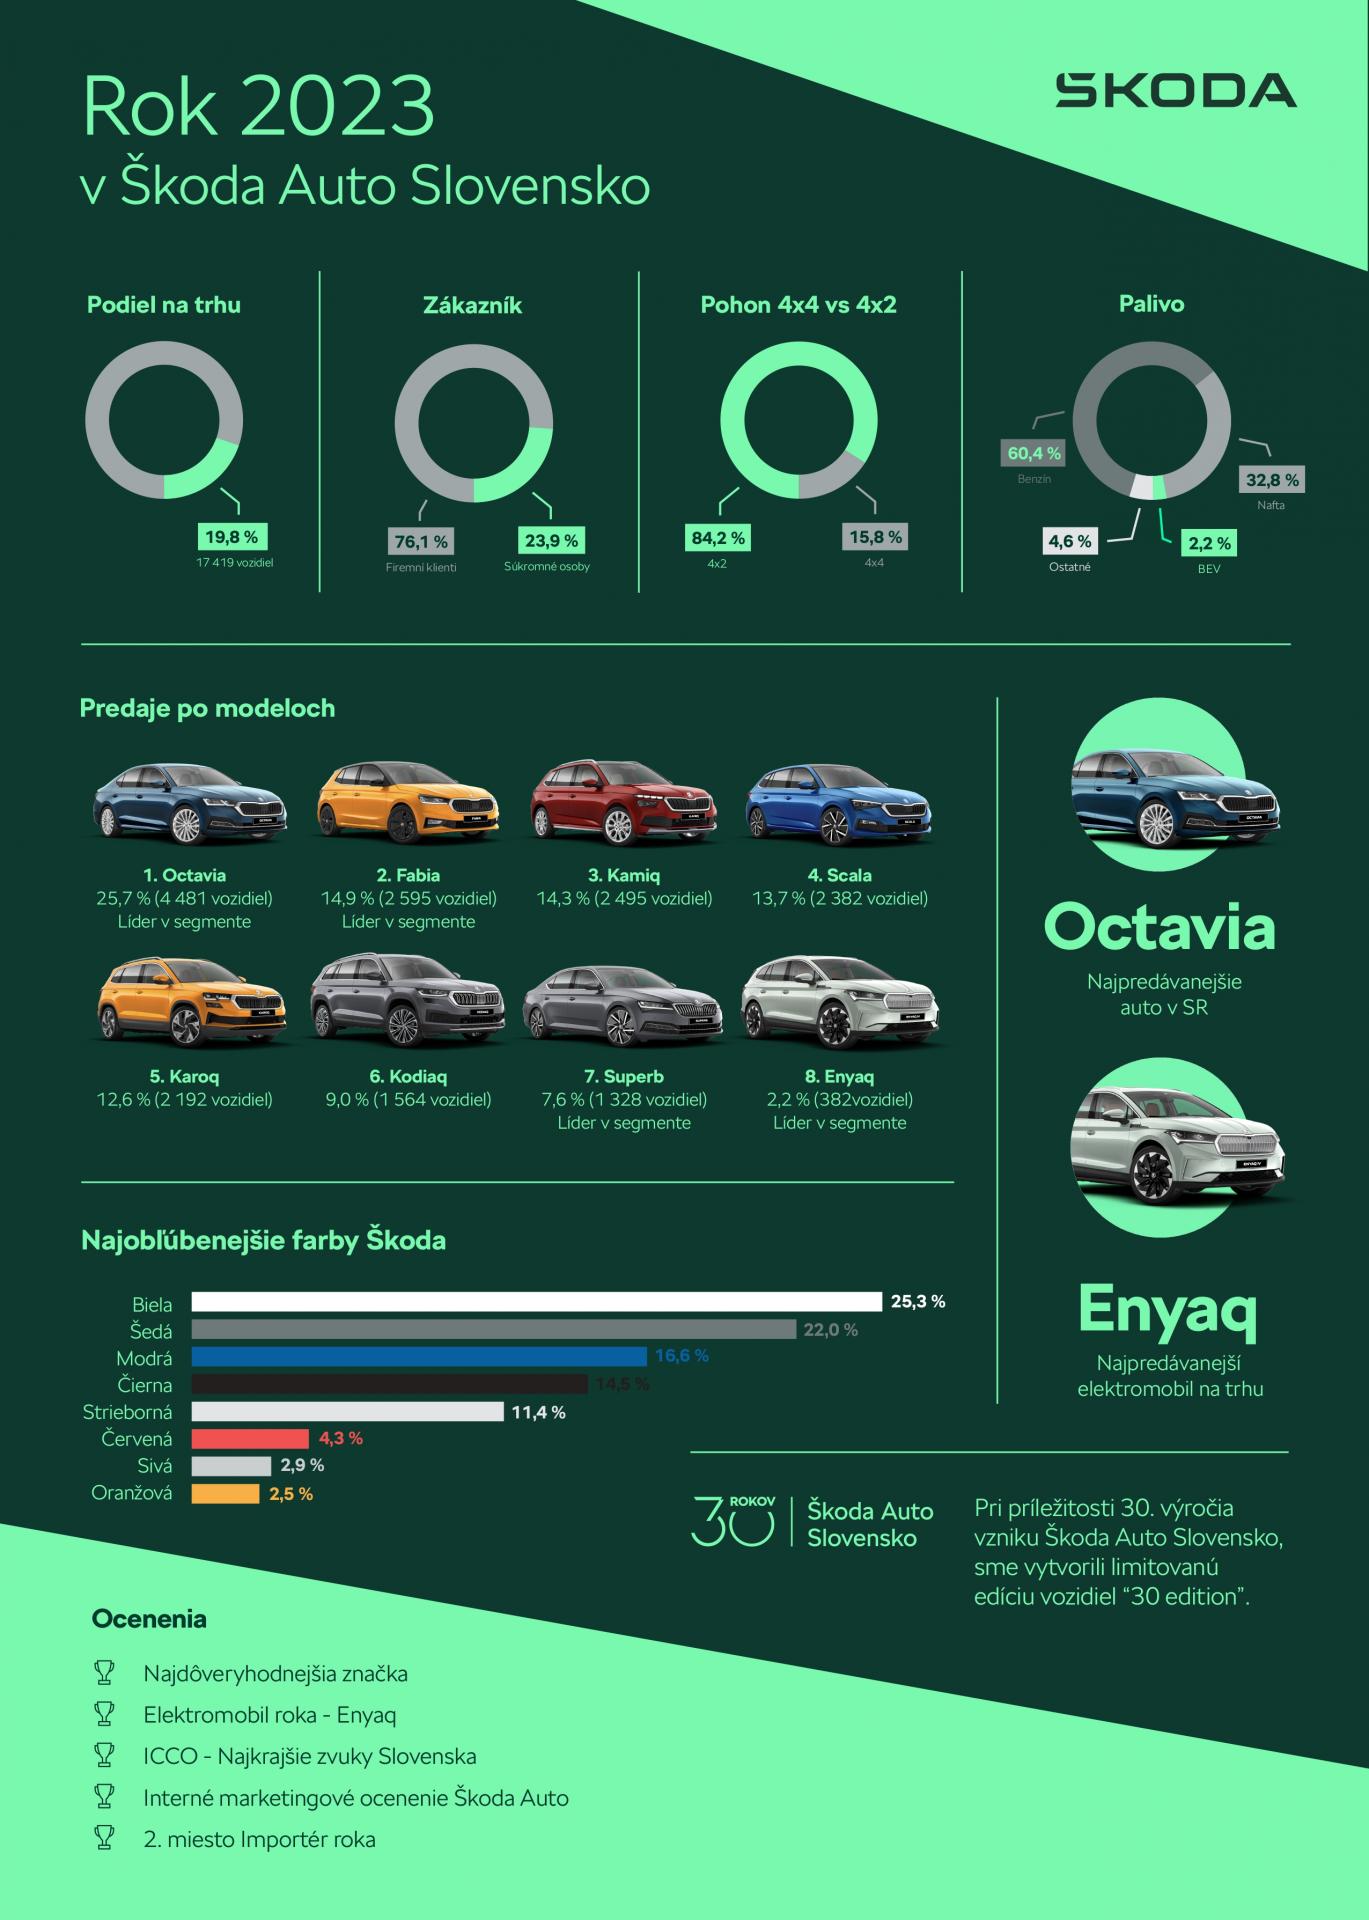 Značke Škoda sa okrem celkových čísel na Slovensku darilo aj v jednotlivých segmentoch. Číslo jedna sa stala pre súkromnú i firemnú klientelu. Z celkových predajov značky tvorilo až 76% predaje firemným zákazníkom (13 249 vozidiel), pričom predaj súkromným osobám predstavoval 24% (4 170 vozidiel). Práve u firemných (tzv. fleetových) zákazníkov sa najviac darilo modelom Fabia, Octavia, Kamiq, Karoq či Scala. 